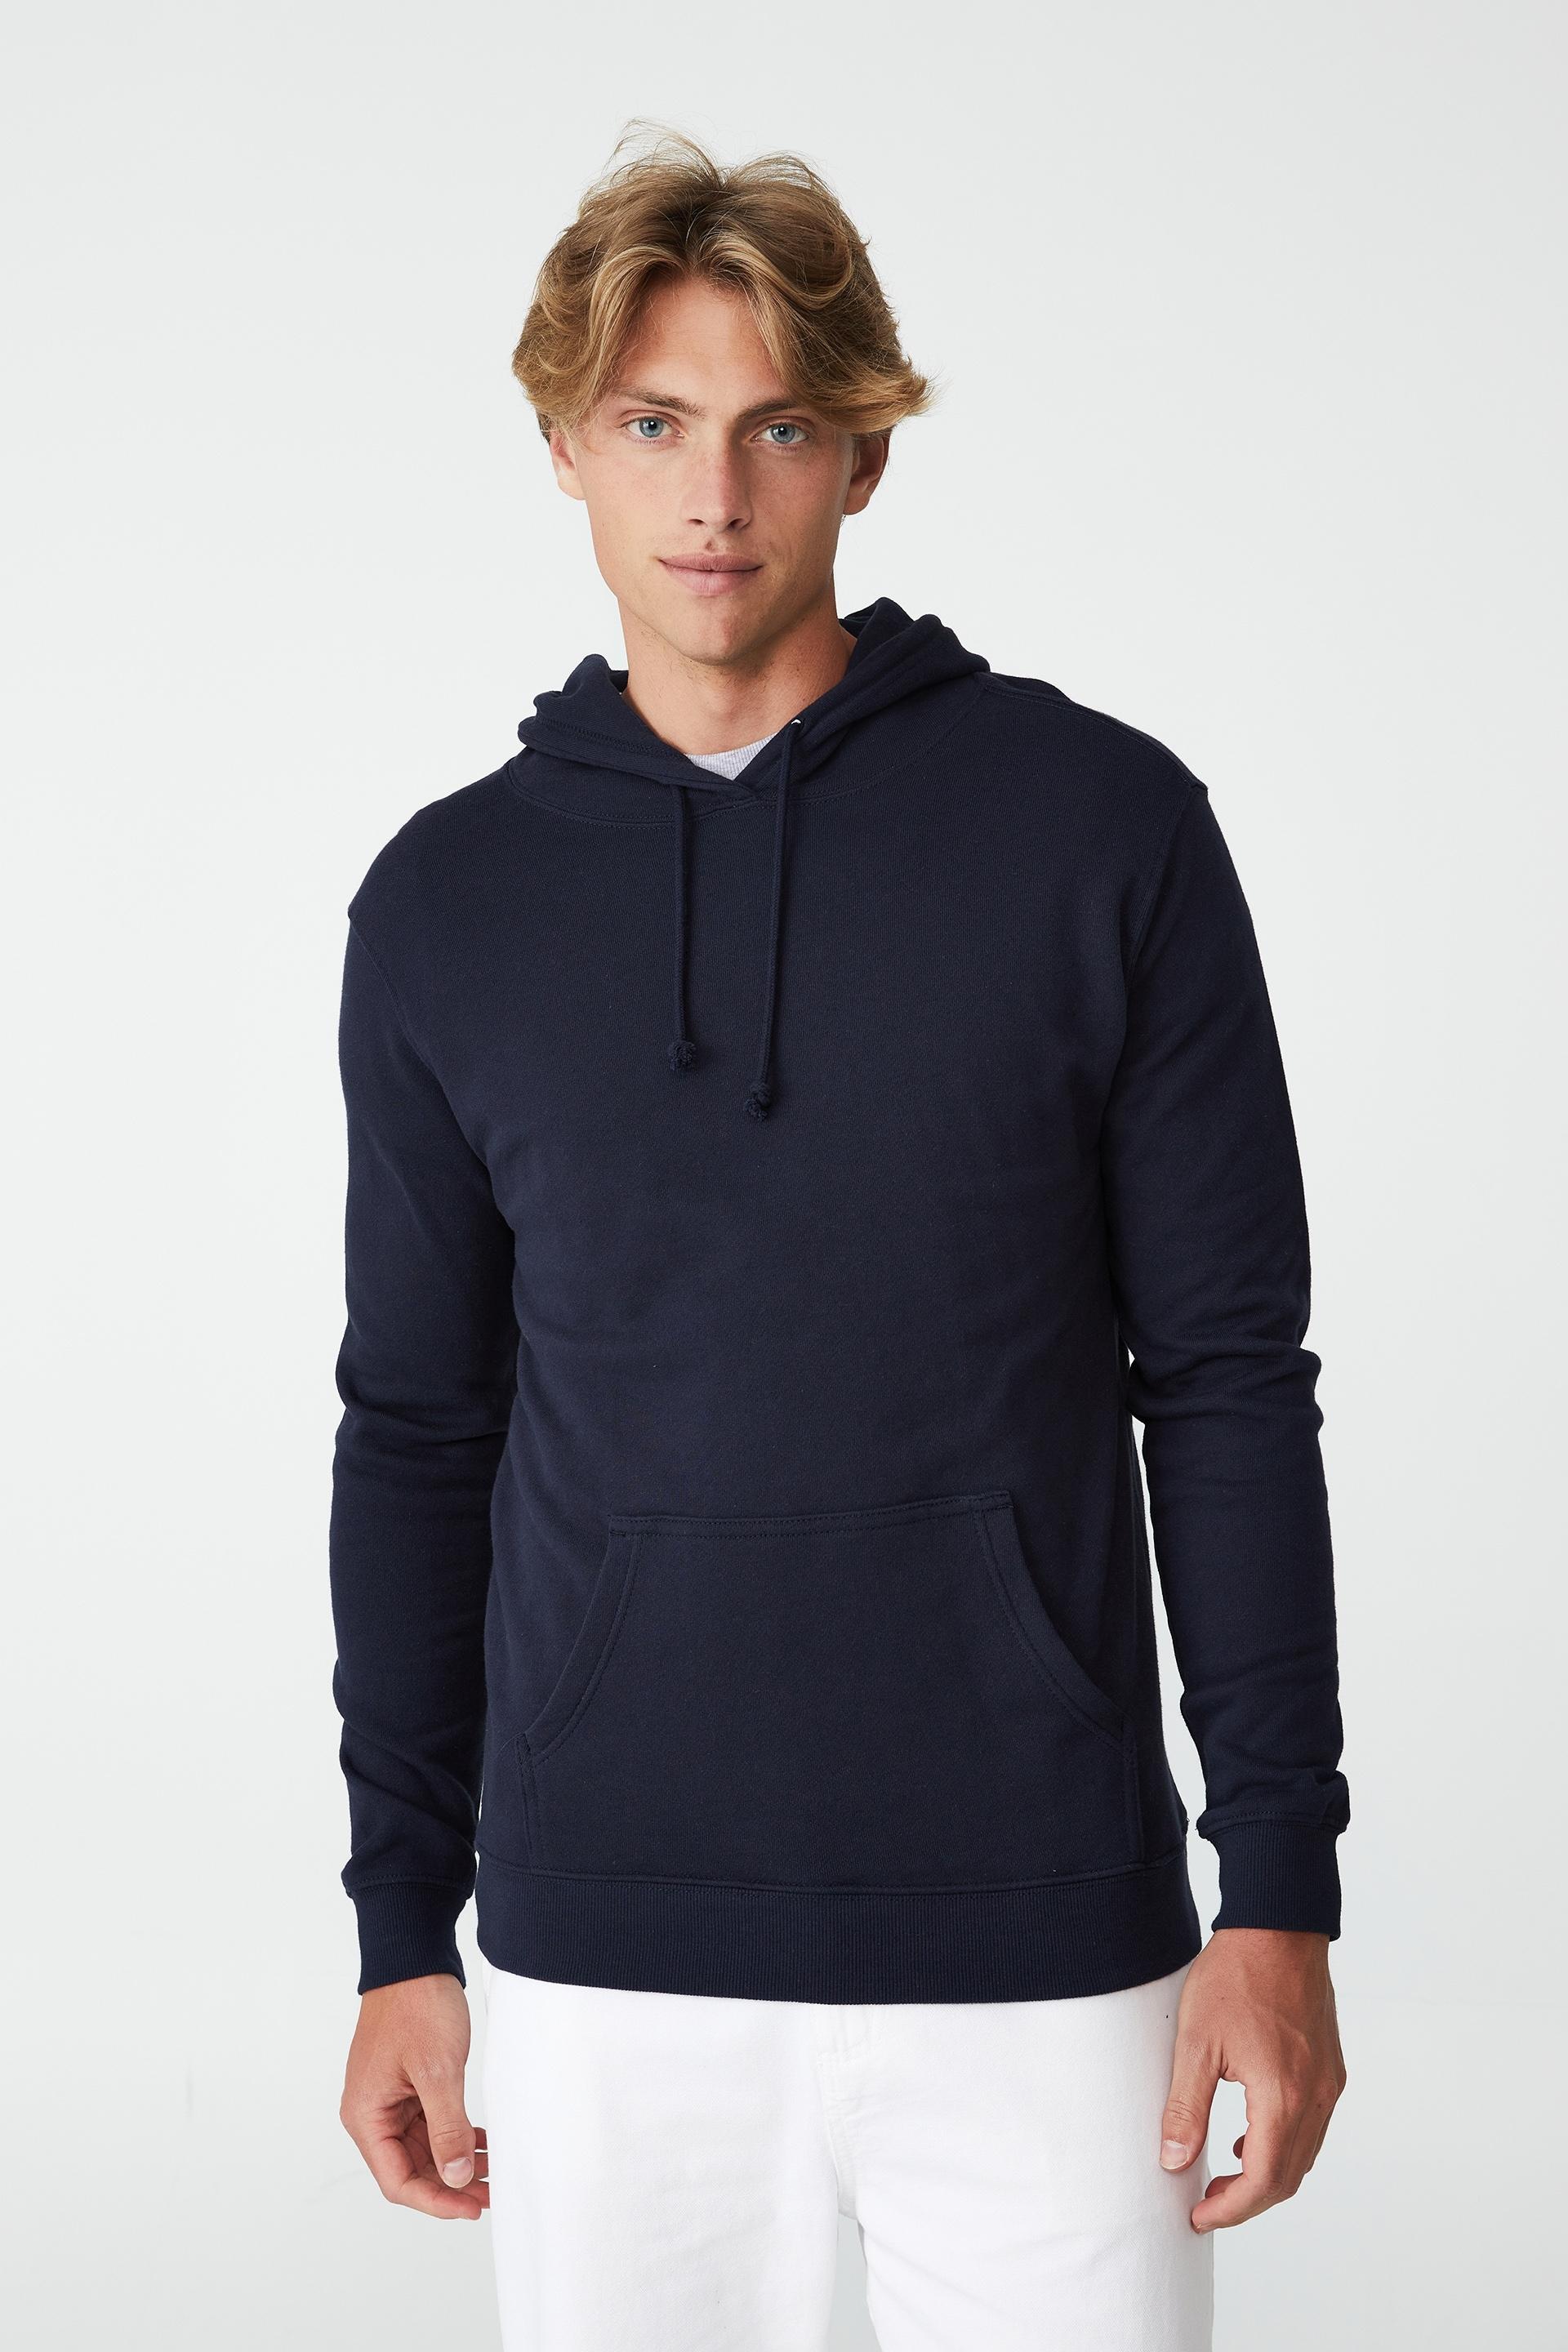 Essential fleece pullover - true navy Cotton On Hoodies & Sweats ...